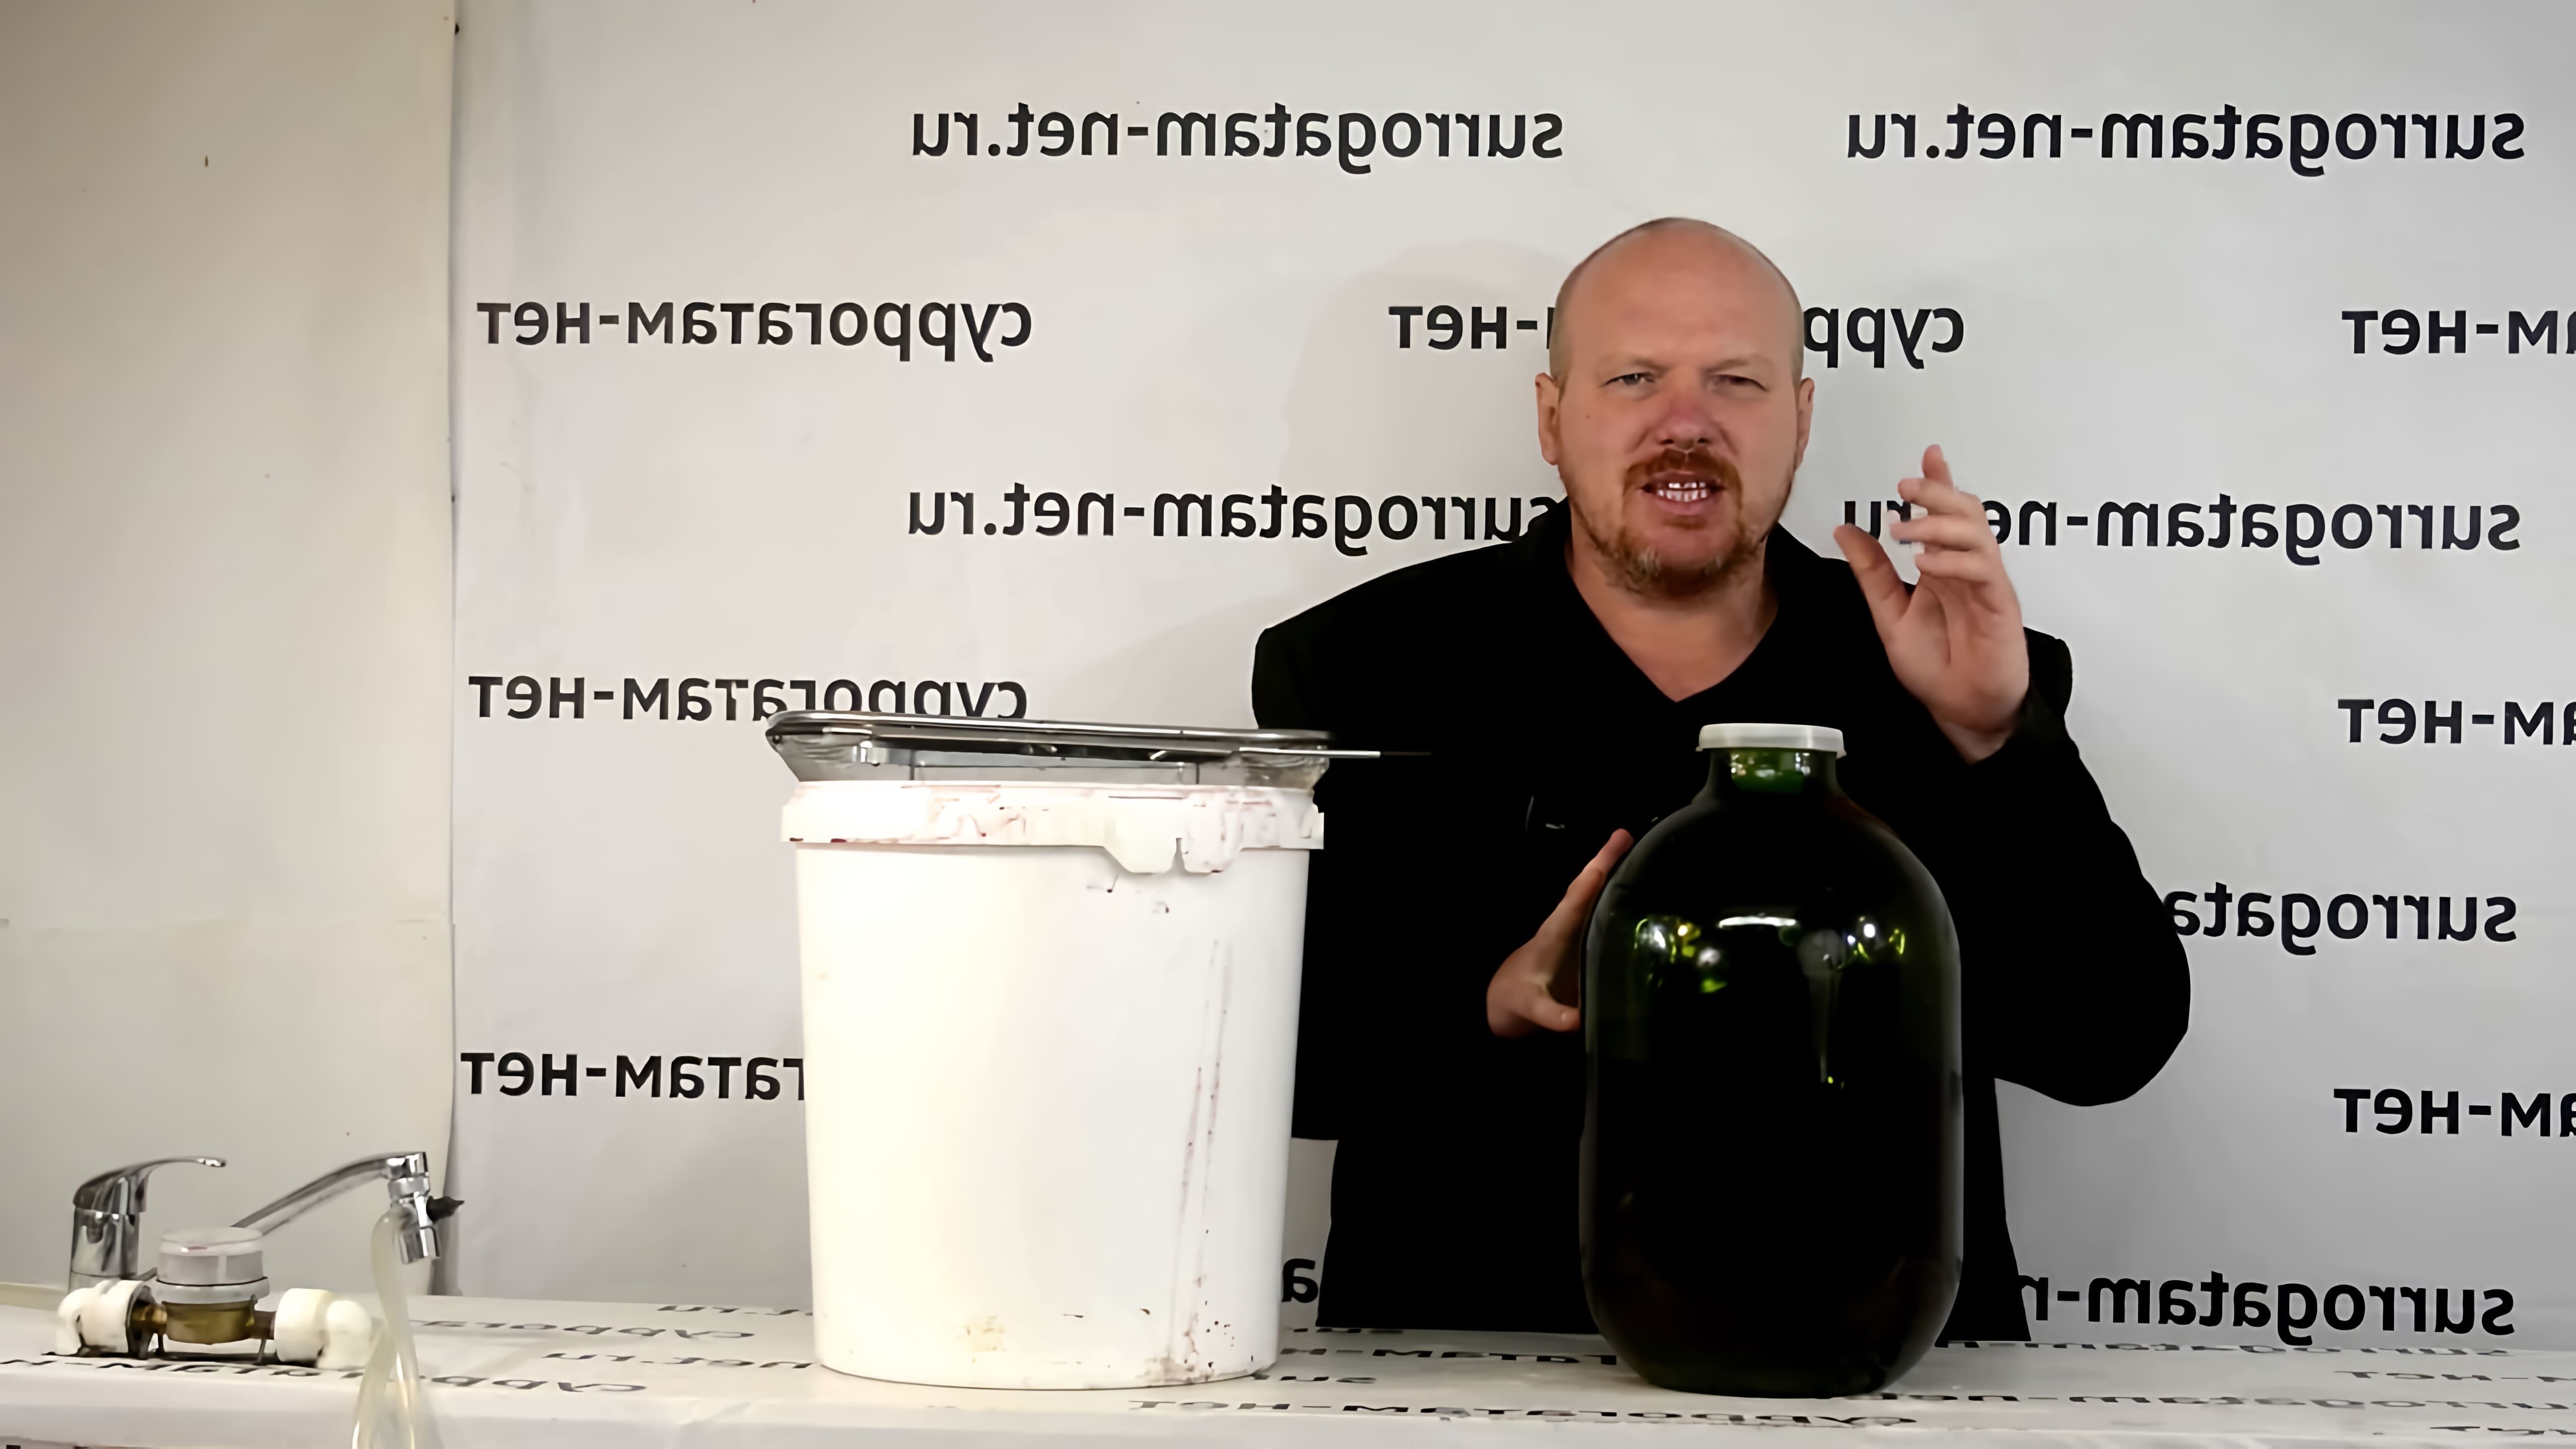 В этом видео демонстрируется простой рецепт приготовления вина из клубники